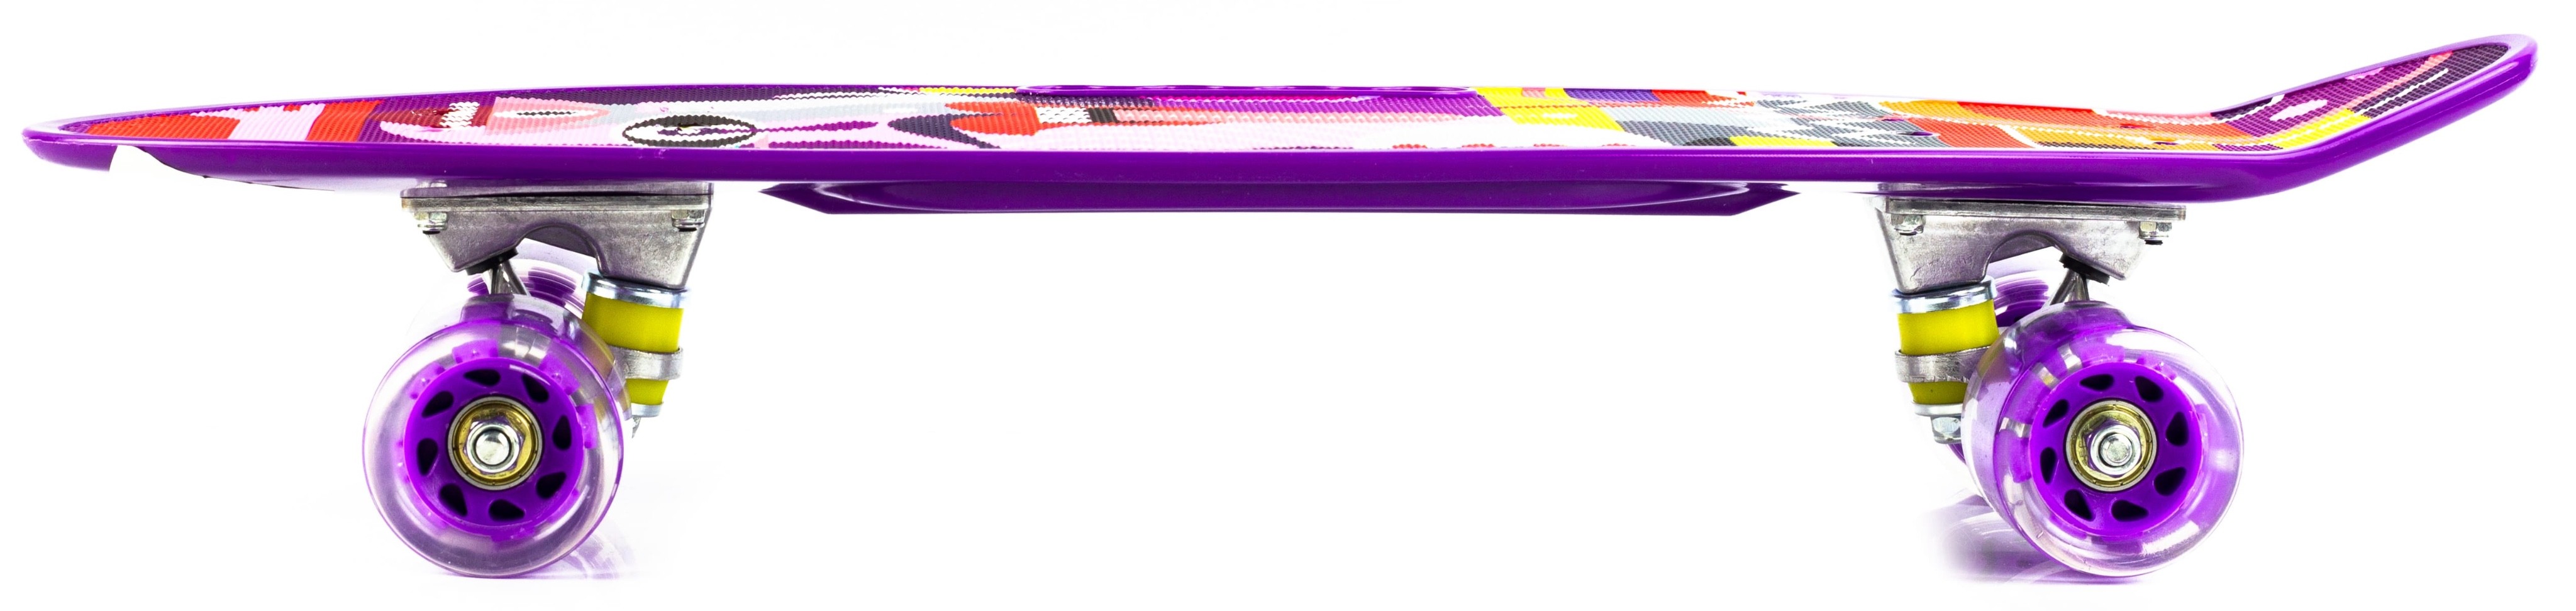 Пенни борд со светящимися колесами и ручкой для переноски, 55 см. Т00165 / Фиолетовый